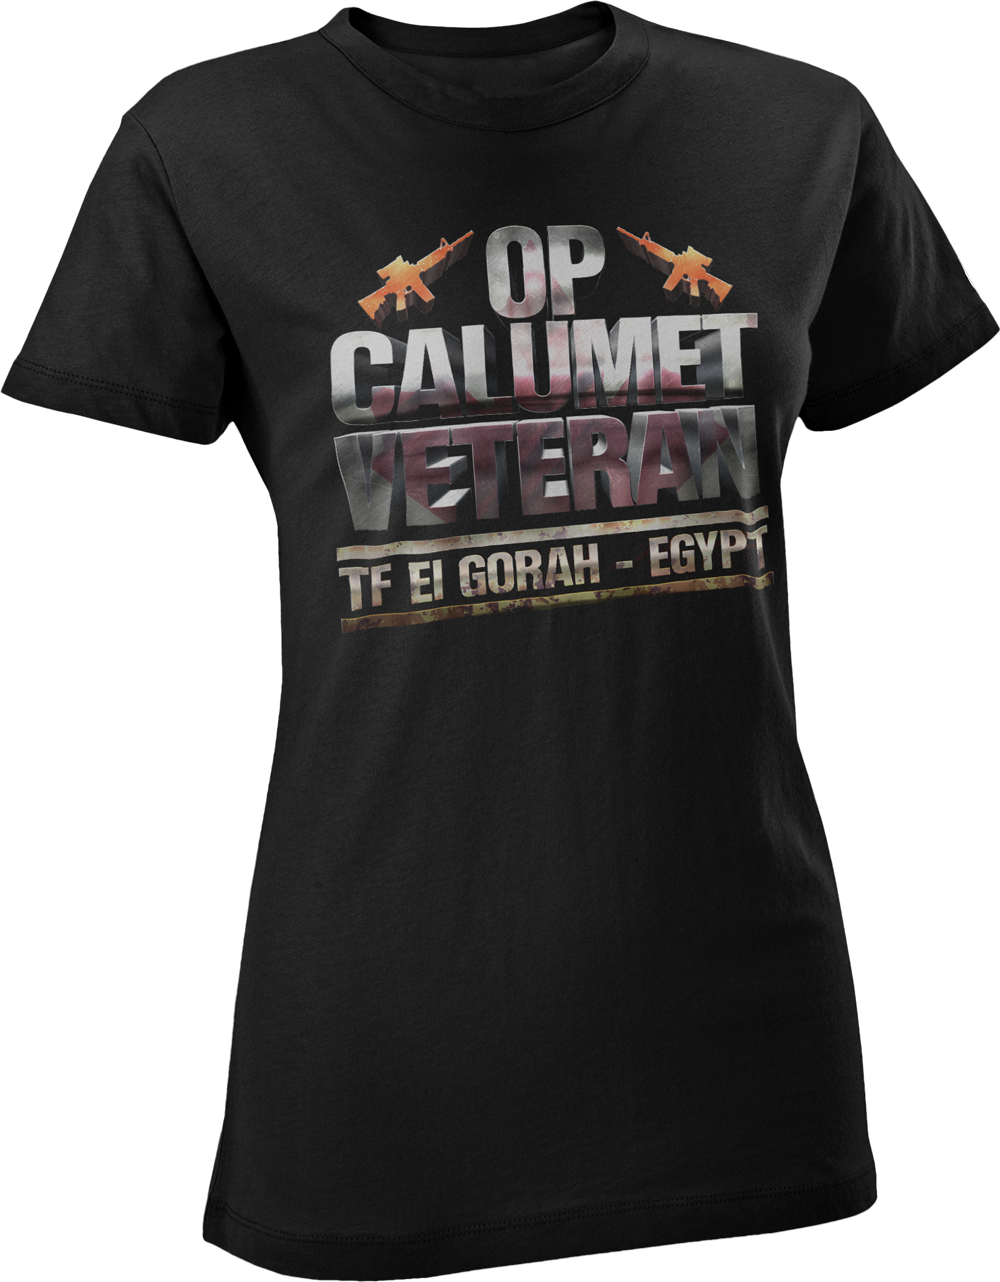 Operation CALUMET Veteran Women's T-Shirt